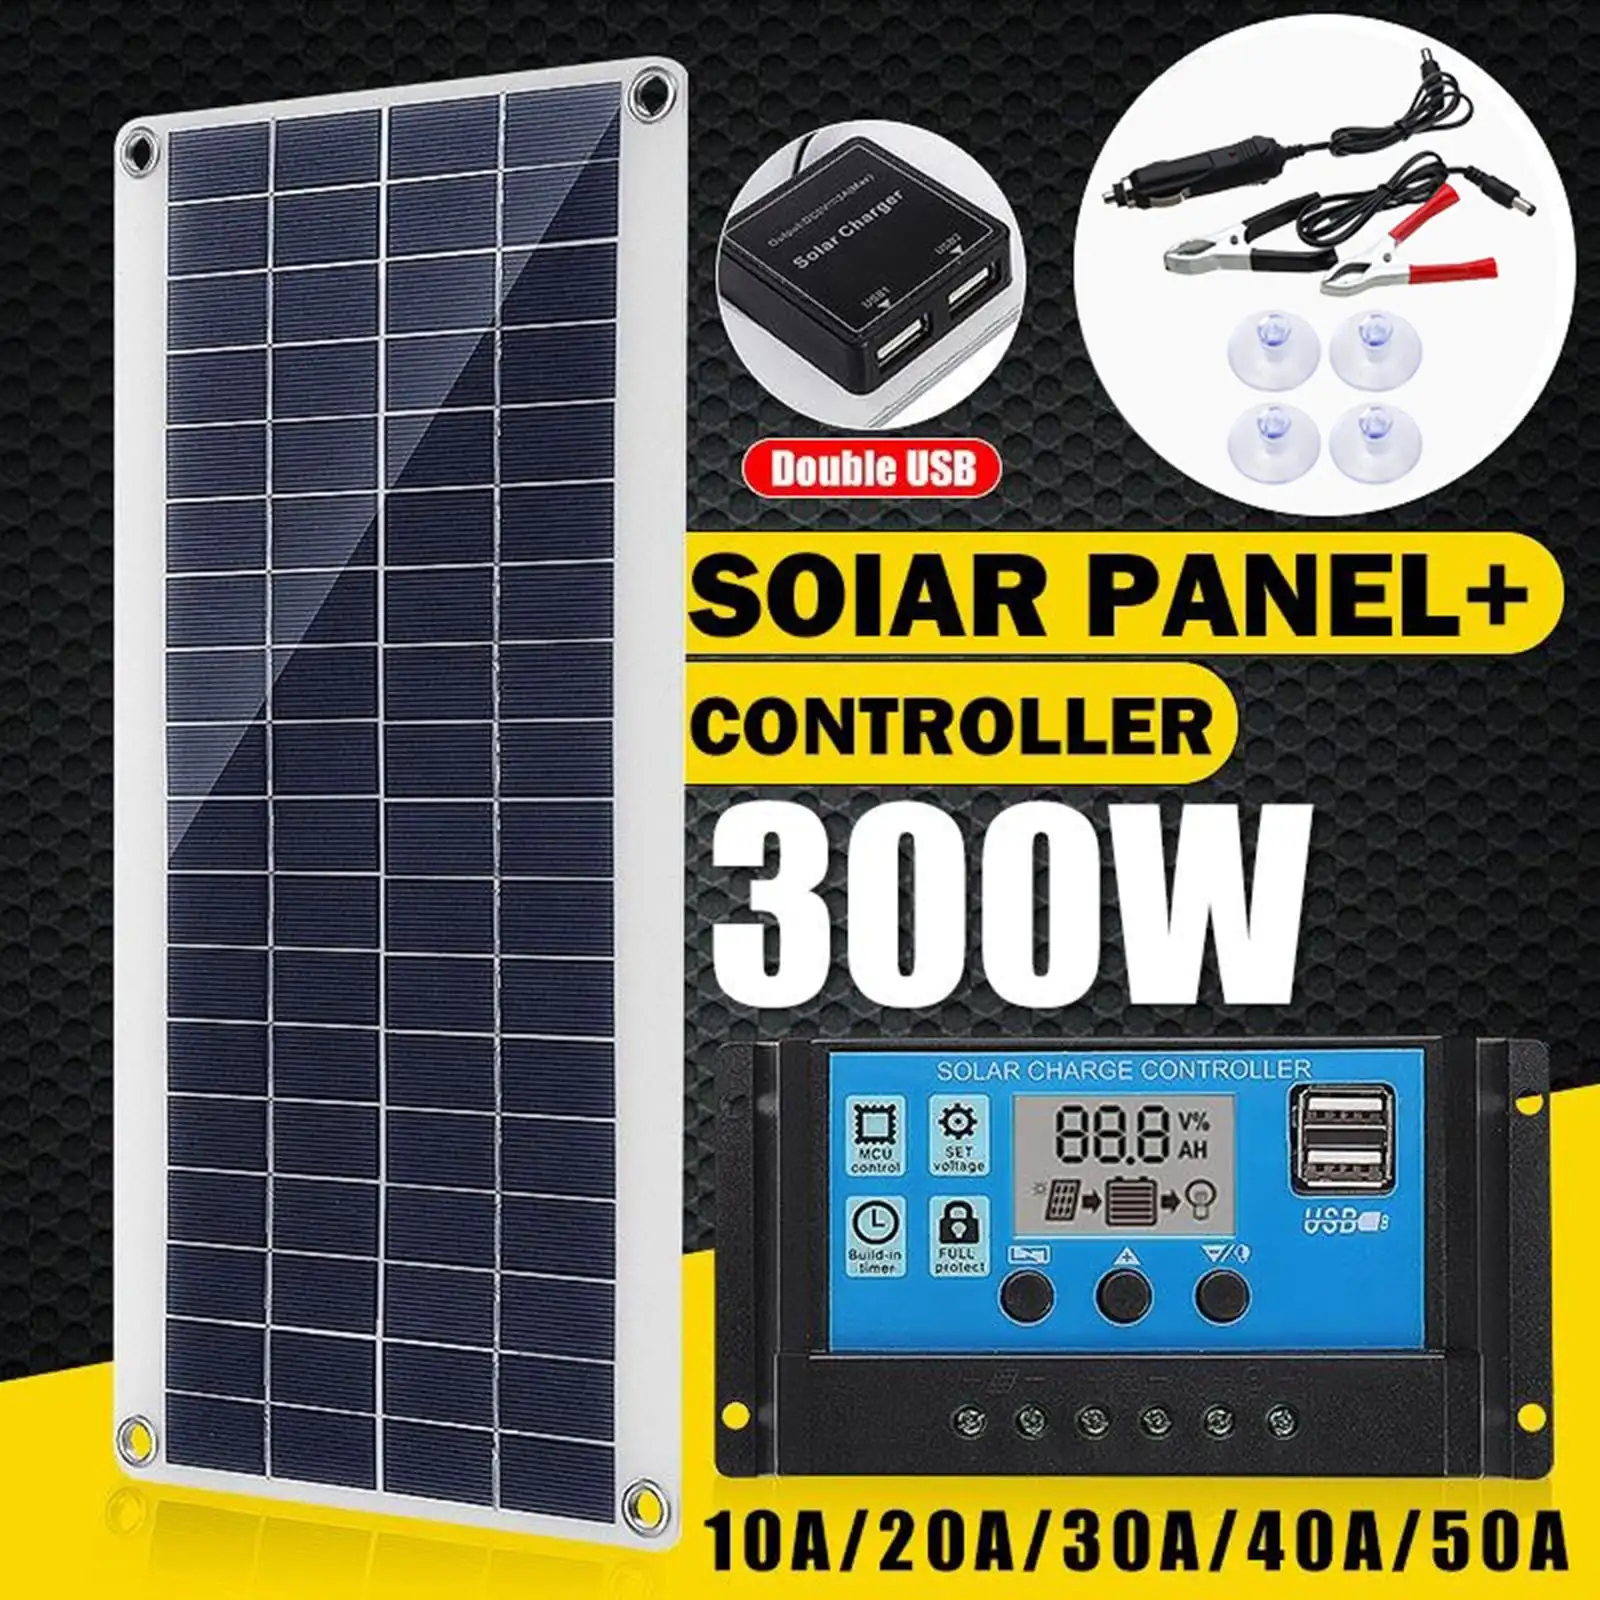 

Гибкая солнечная панель, Солнечный контроллер 50A-10A, 12 В, для автомобилей, домов на колесах, лодок, крыш, фургонов, кемпинга